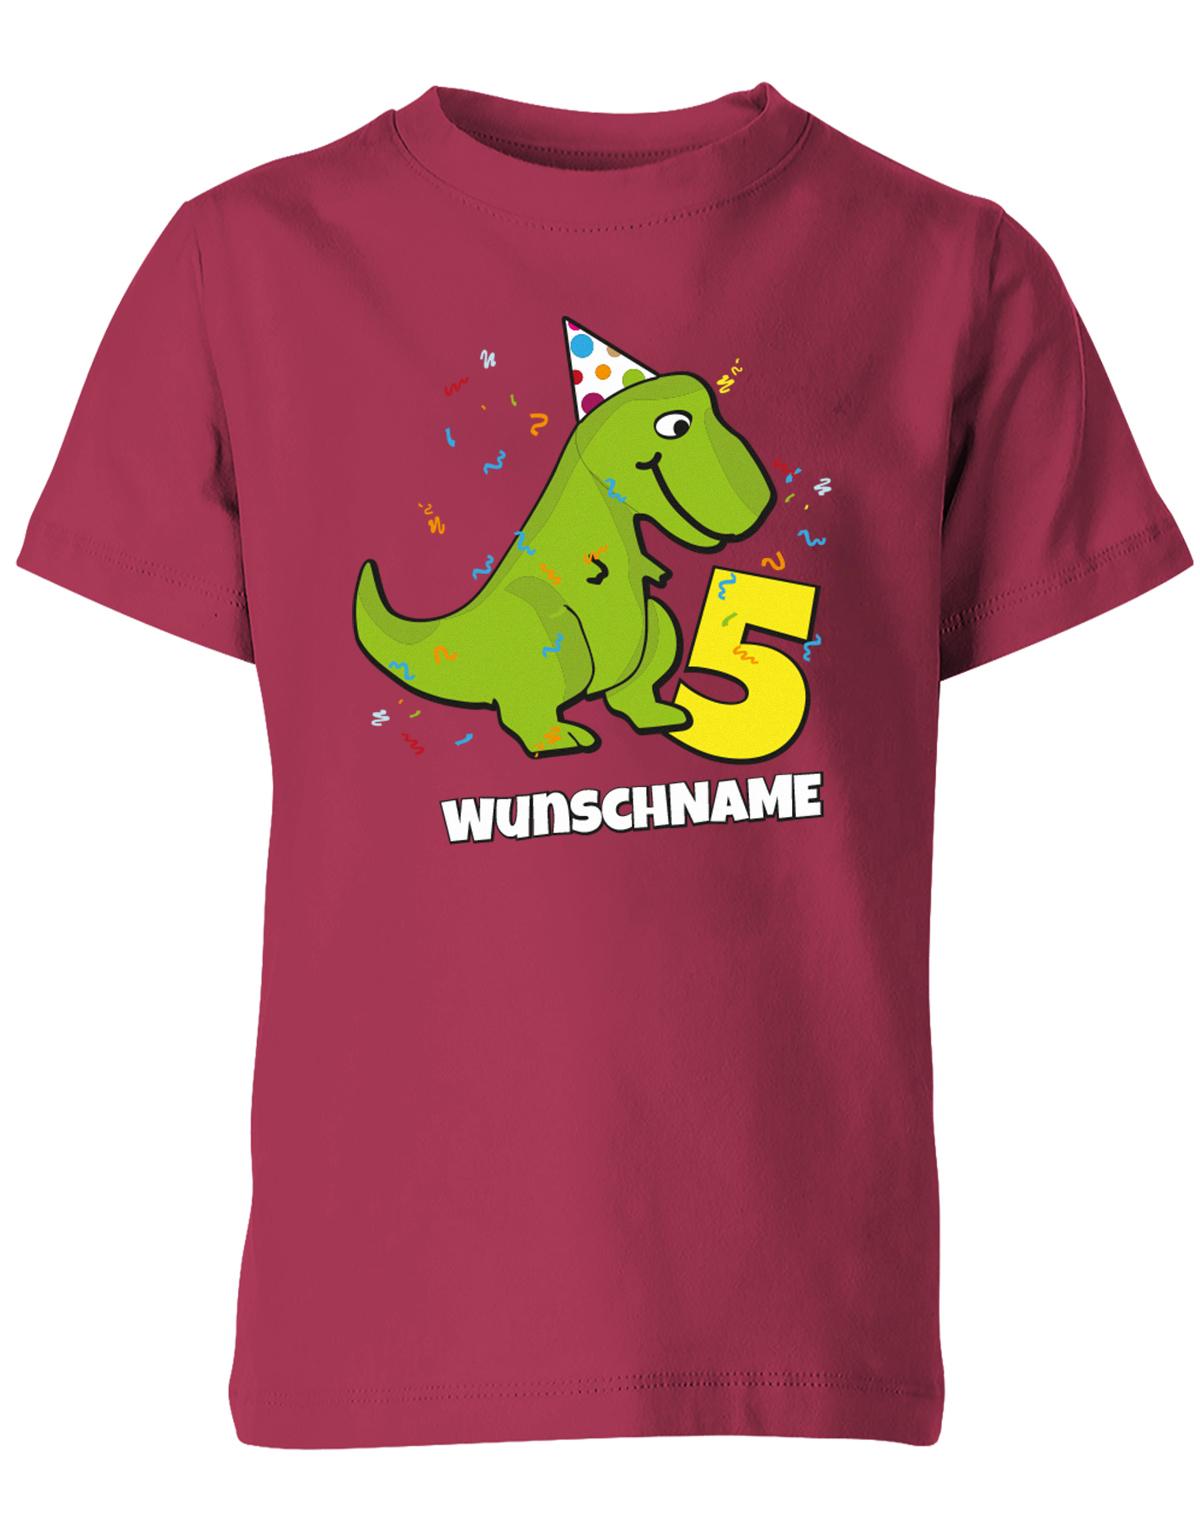 ich-bin-5-Dinosaurier-t-rex-wunschname-geburtstag-kinder-shirt-sorbet